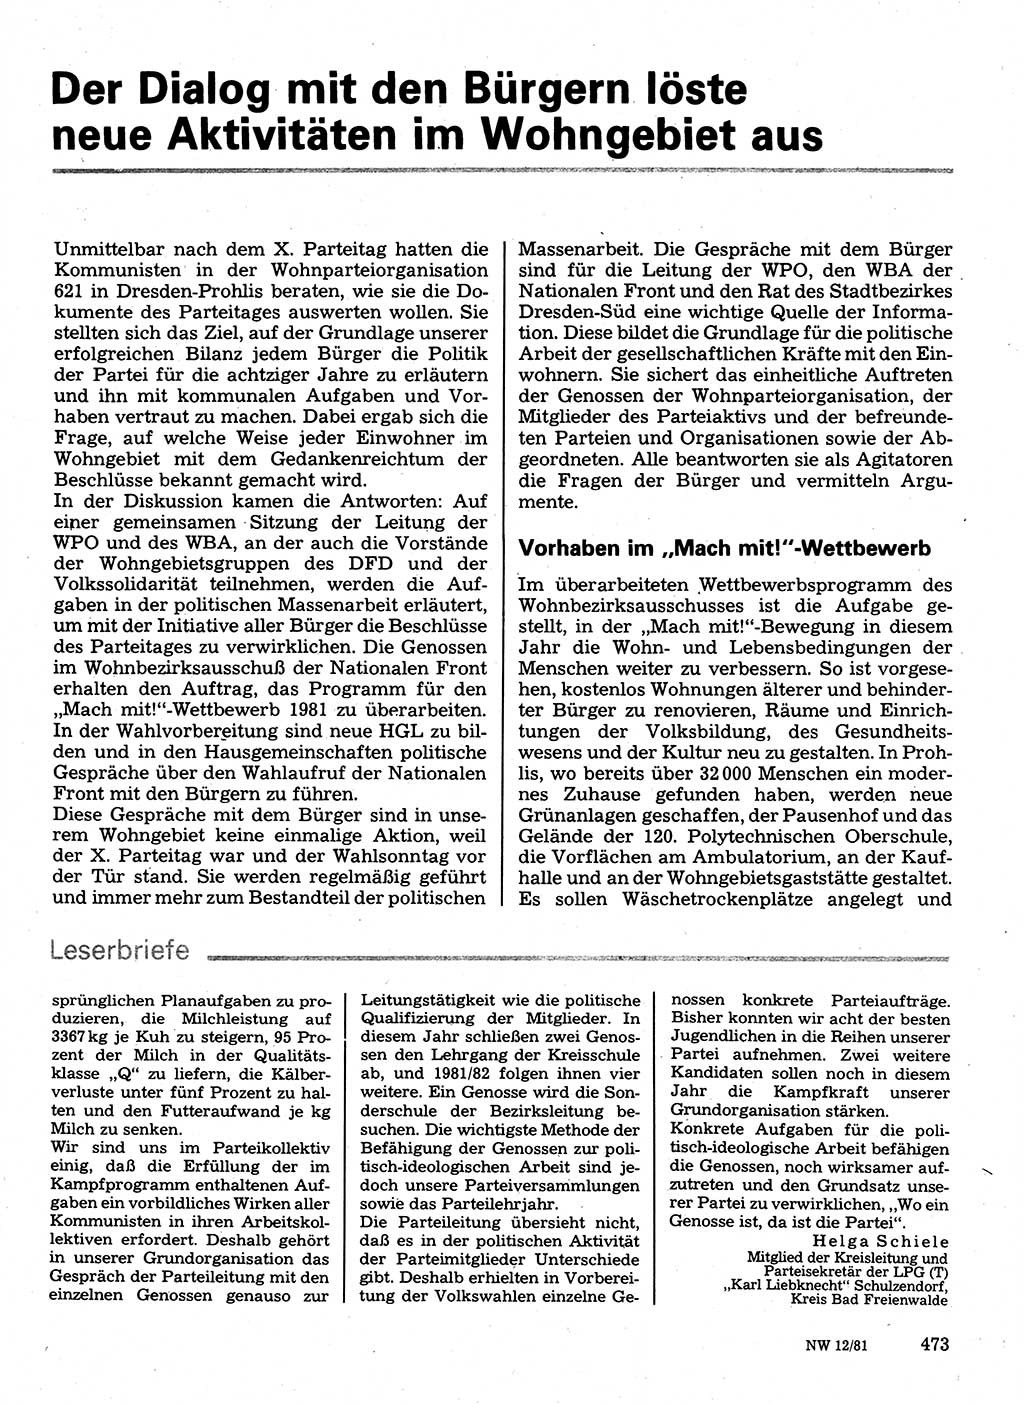 Neuer Weg (NW), Organ des Zentralkomitees (ZK) der SED (Sozialistische Einheitspartei Deutschlands) für Fragen des Parteilebens, 36. Jahrgang [Deutsche Demokratische Republik (DDR)] 1981, Seite 473 (NW ZK SED DDR 1981, S. 473)